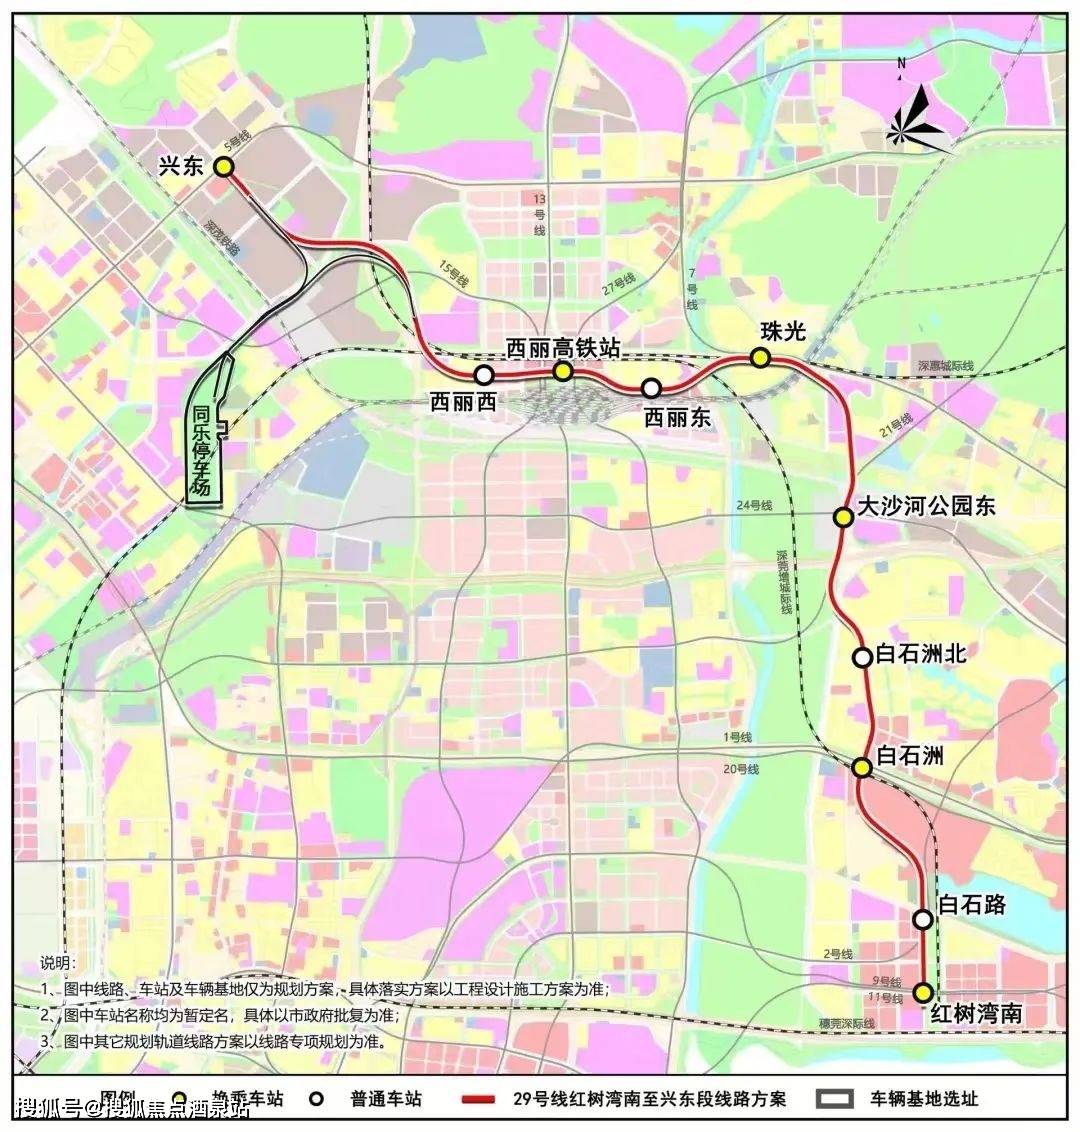 29号地铁线:该线路为南山至光明的普速线路,主要功能为带动沿线城市